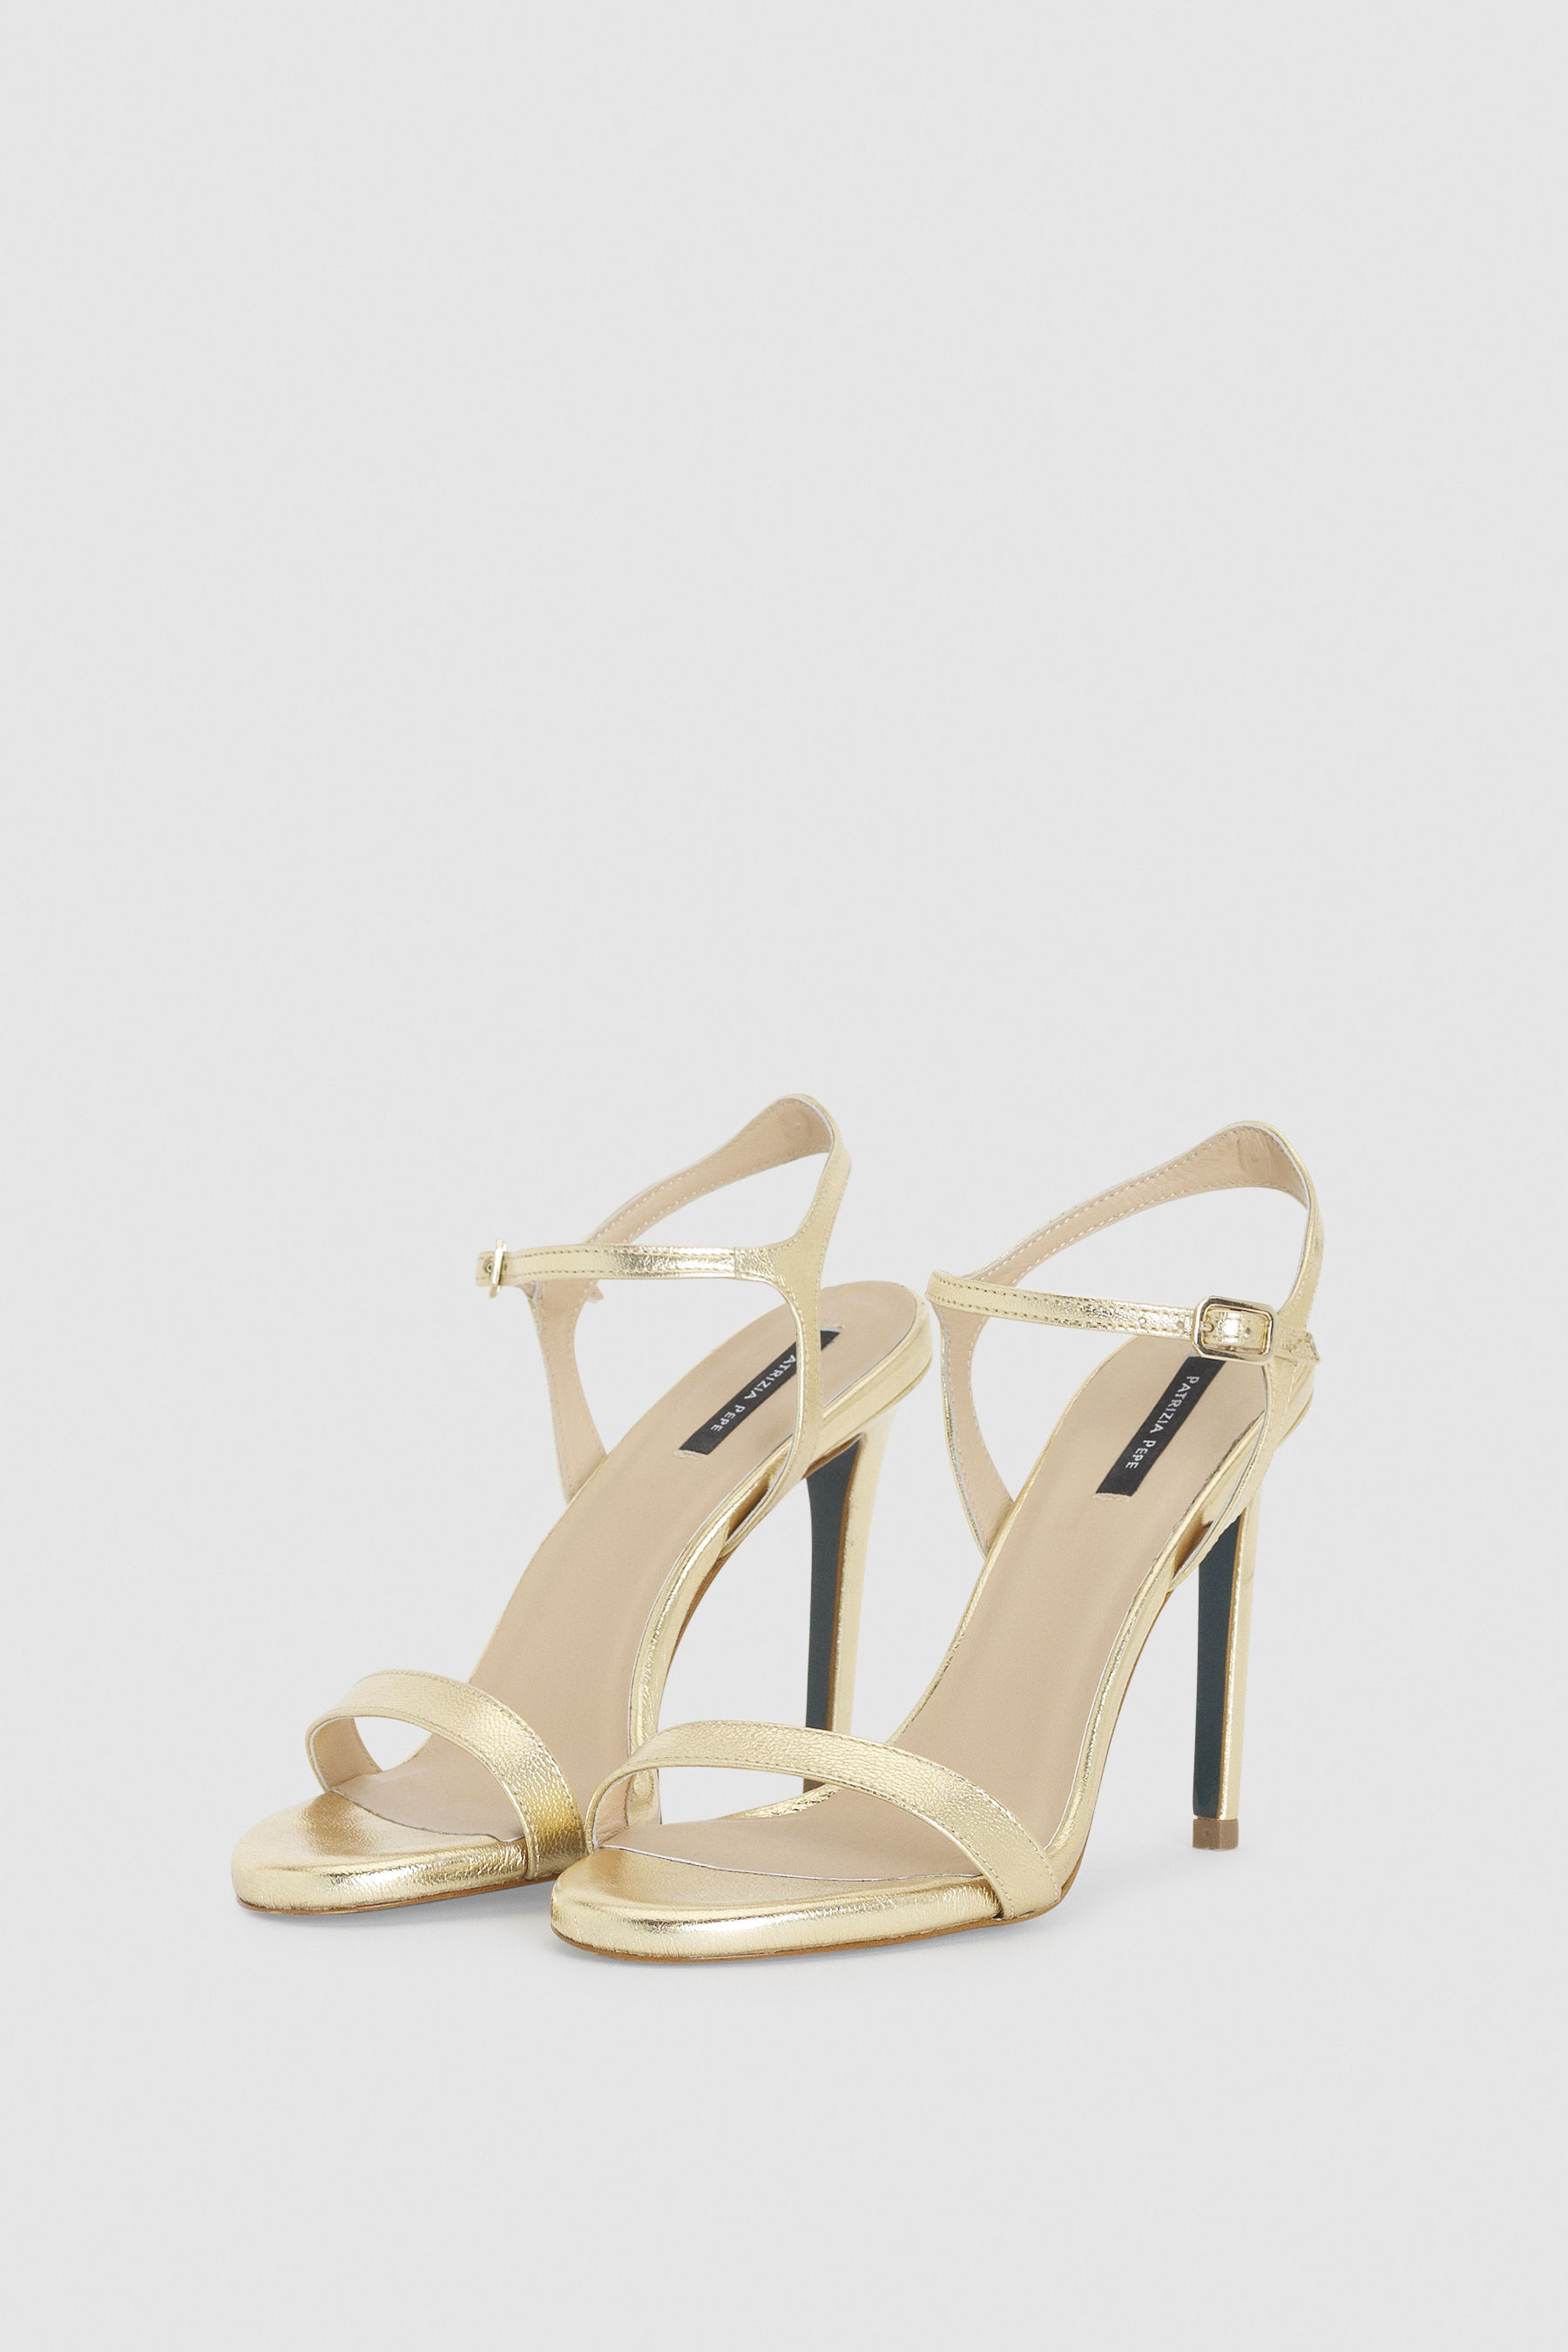 white slip on heeled sandals